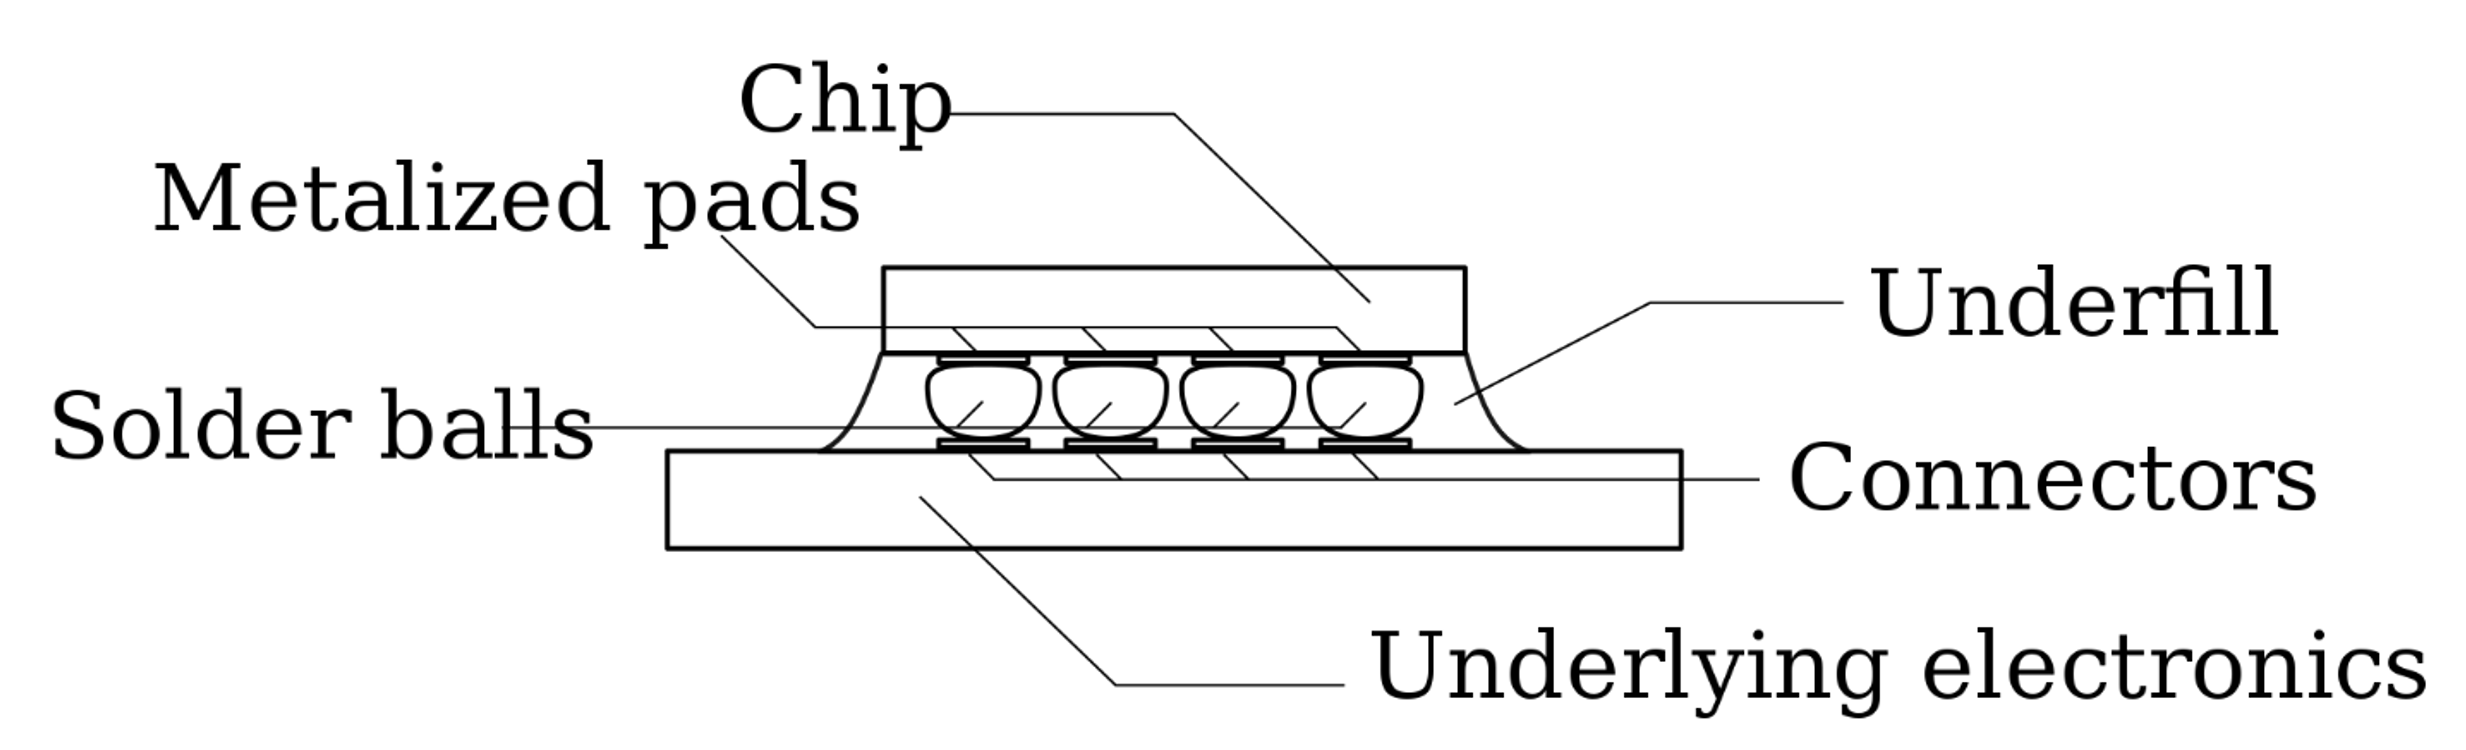 図 2: フリップチップ コンポーネント。 出典: 半導体工学